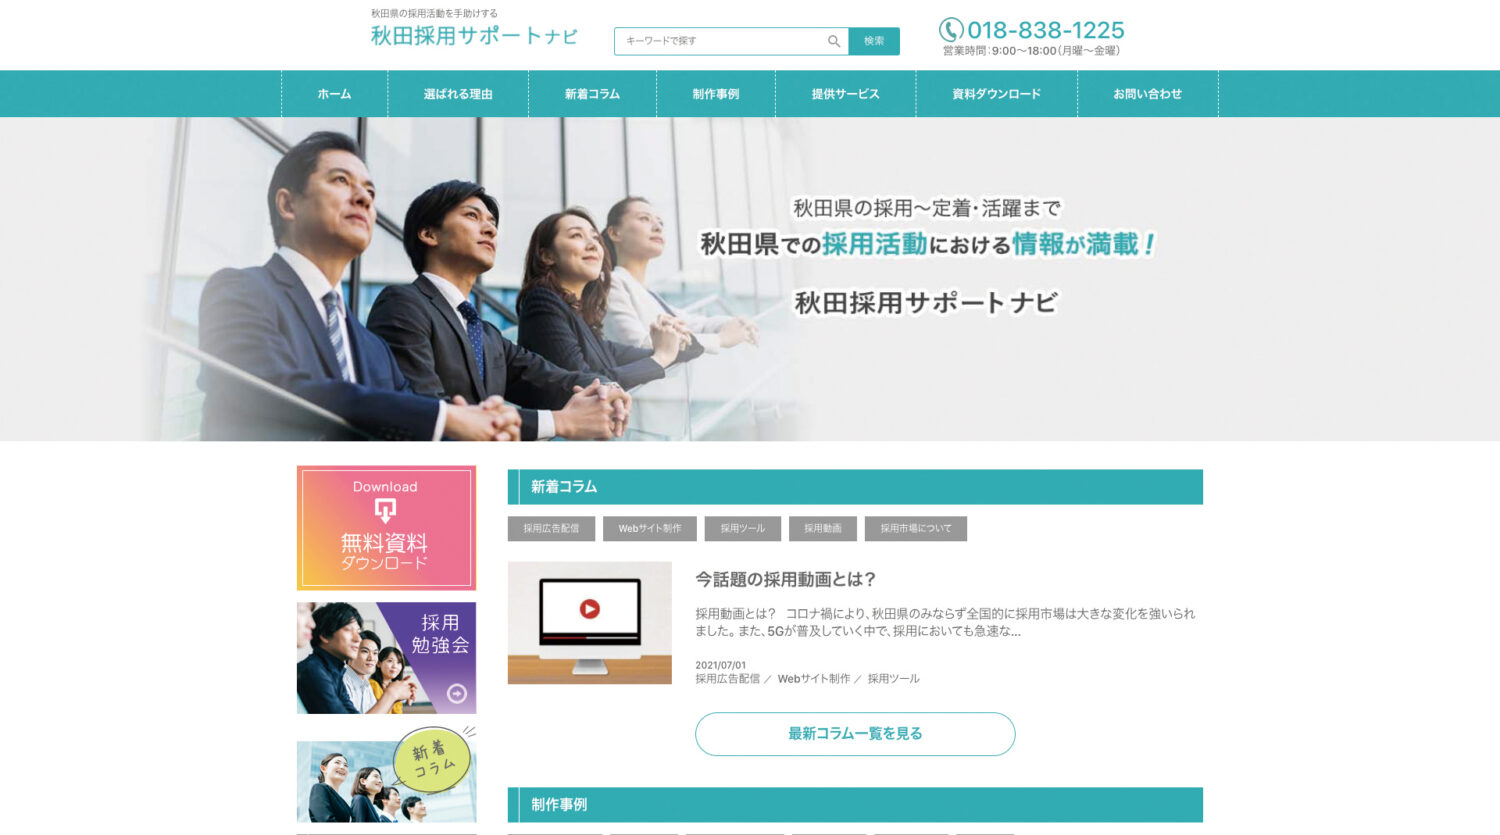 情報サイト「秋田採用サポートナビ」はじめました。